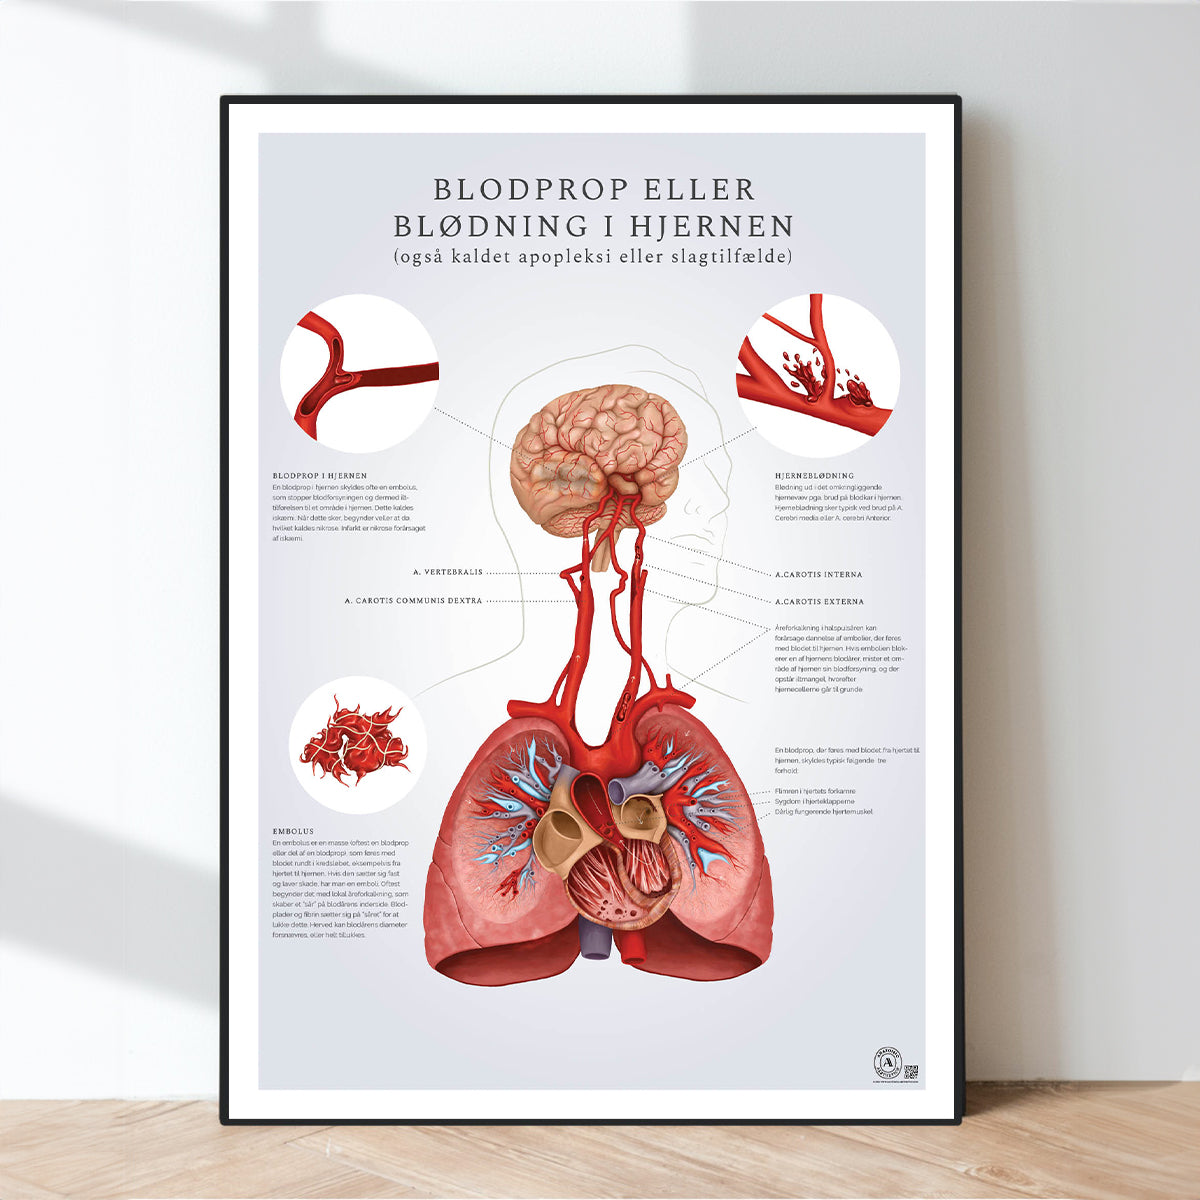 Plakater om hjertets anatomi og karsystemet